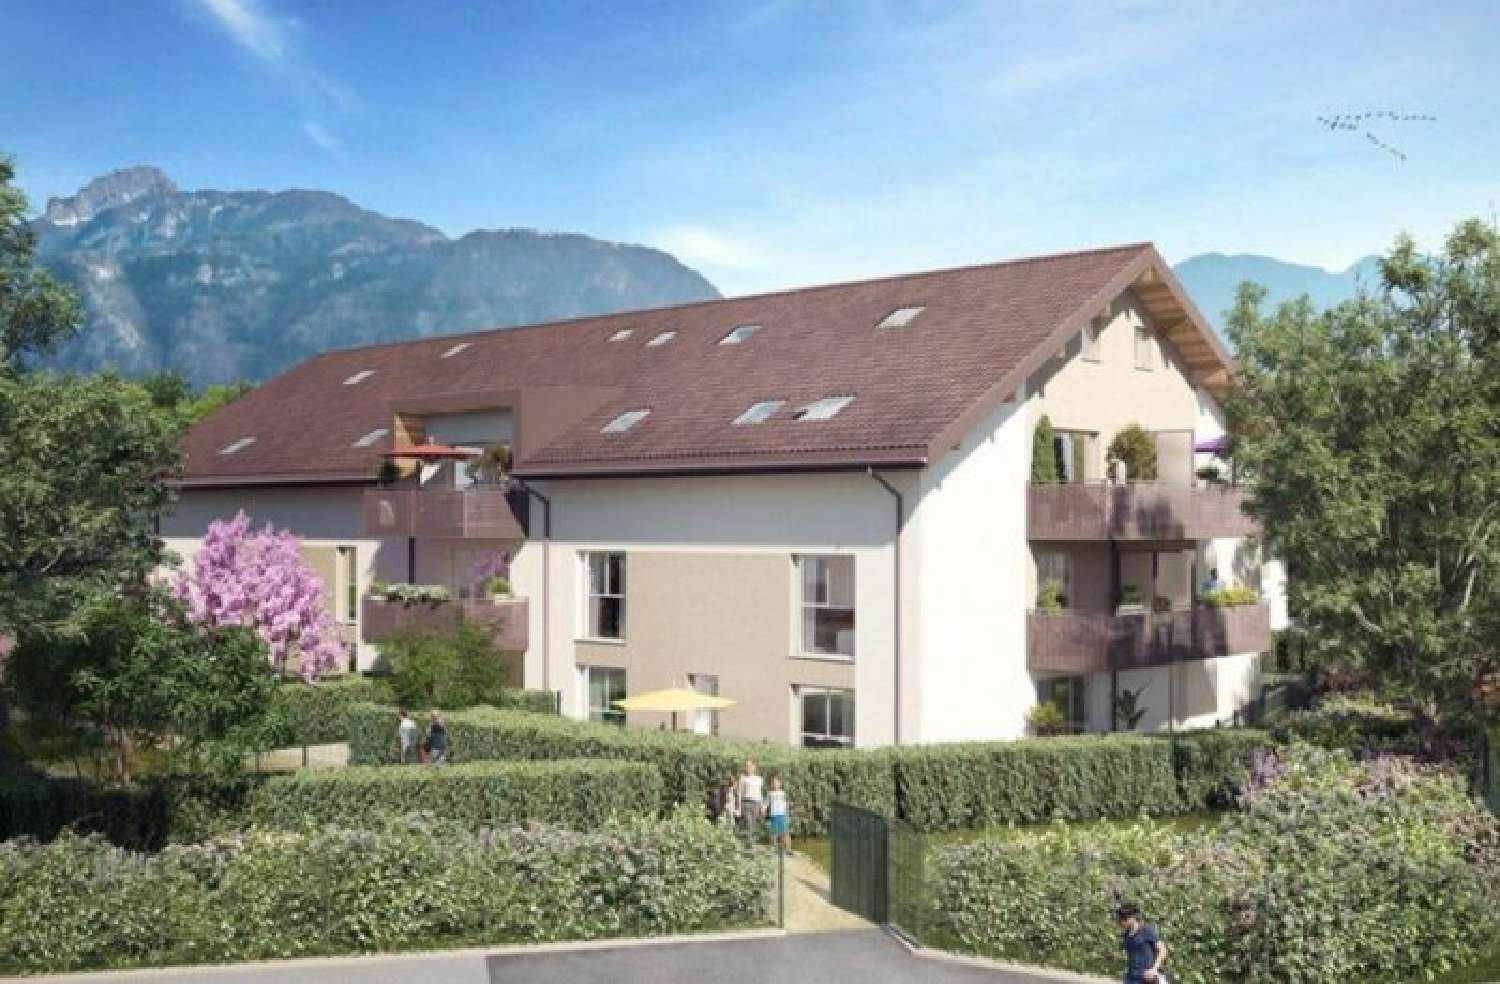 Arenthon Haute-Savoie Wohnung/ Apartment Bild 6814469